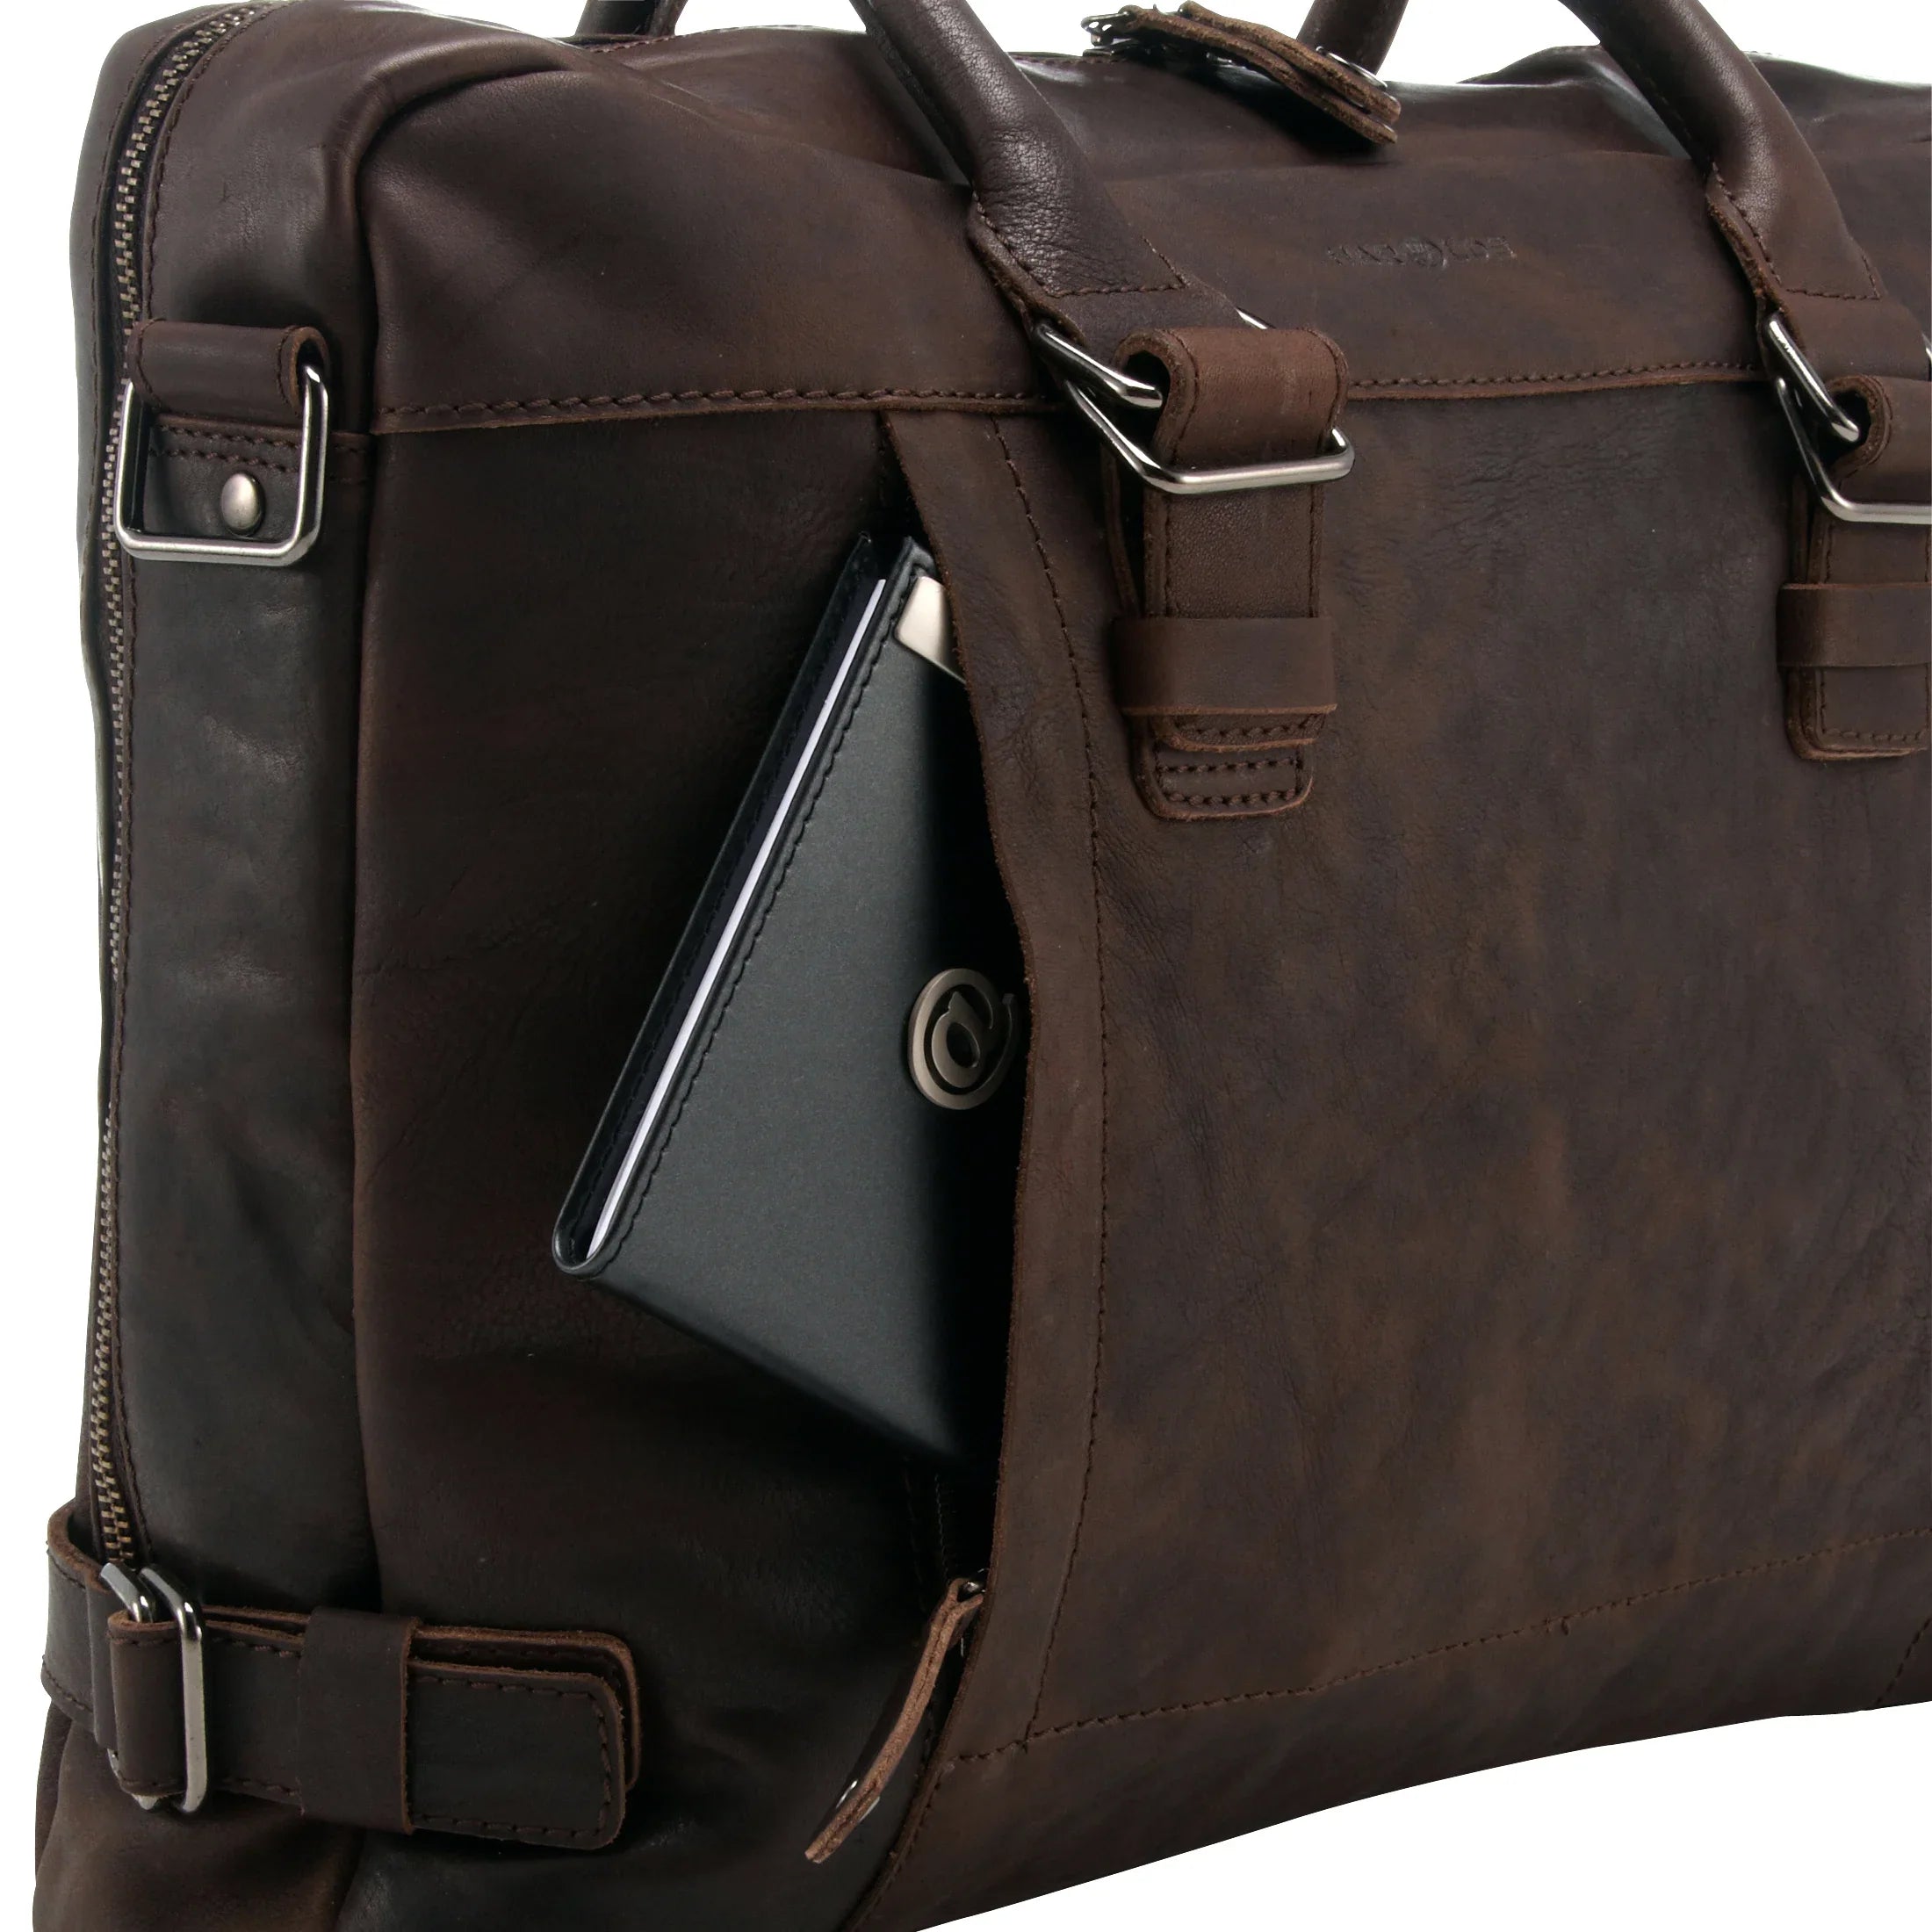 Harolds R. Johnson Businesstasche mit Notebookfach aus Leder 40 cm - dunkelbraun